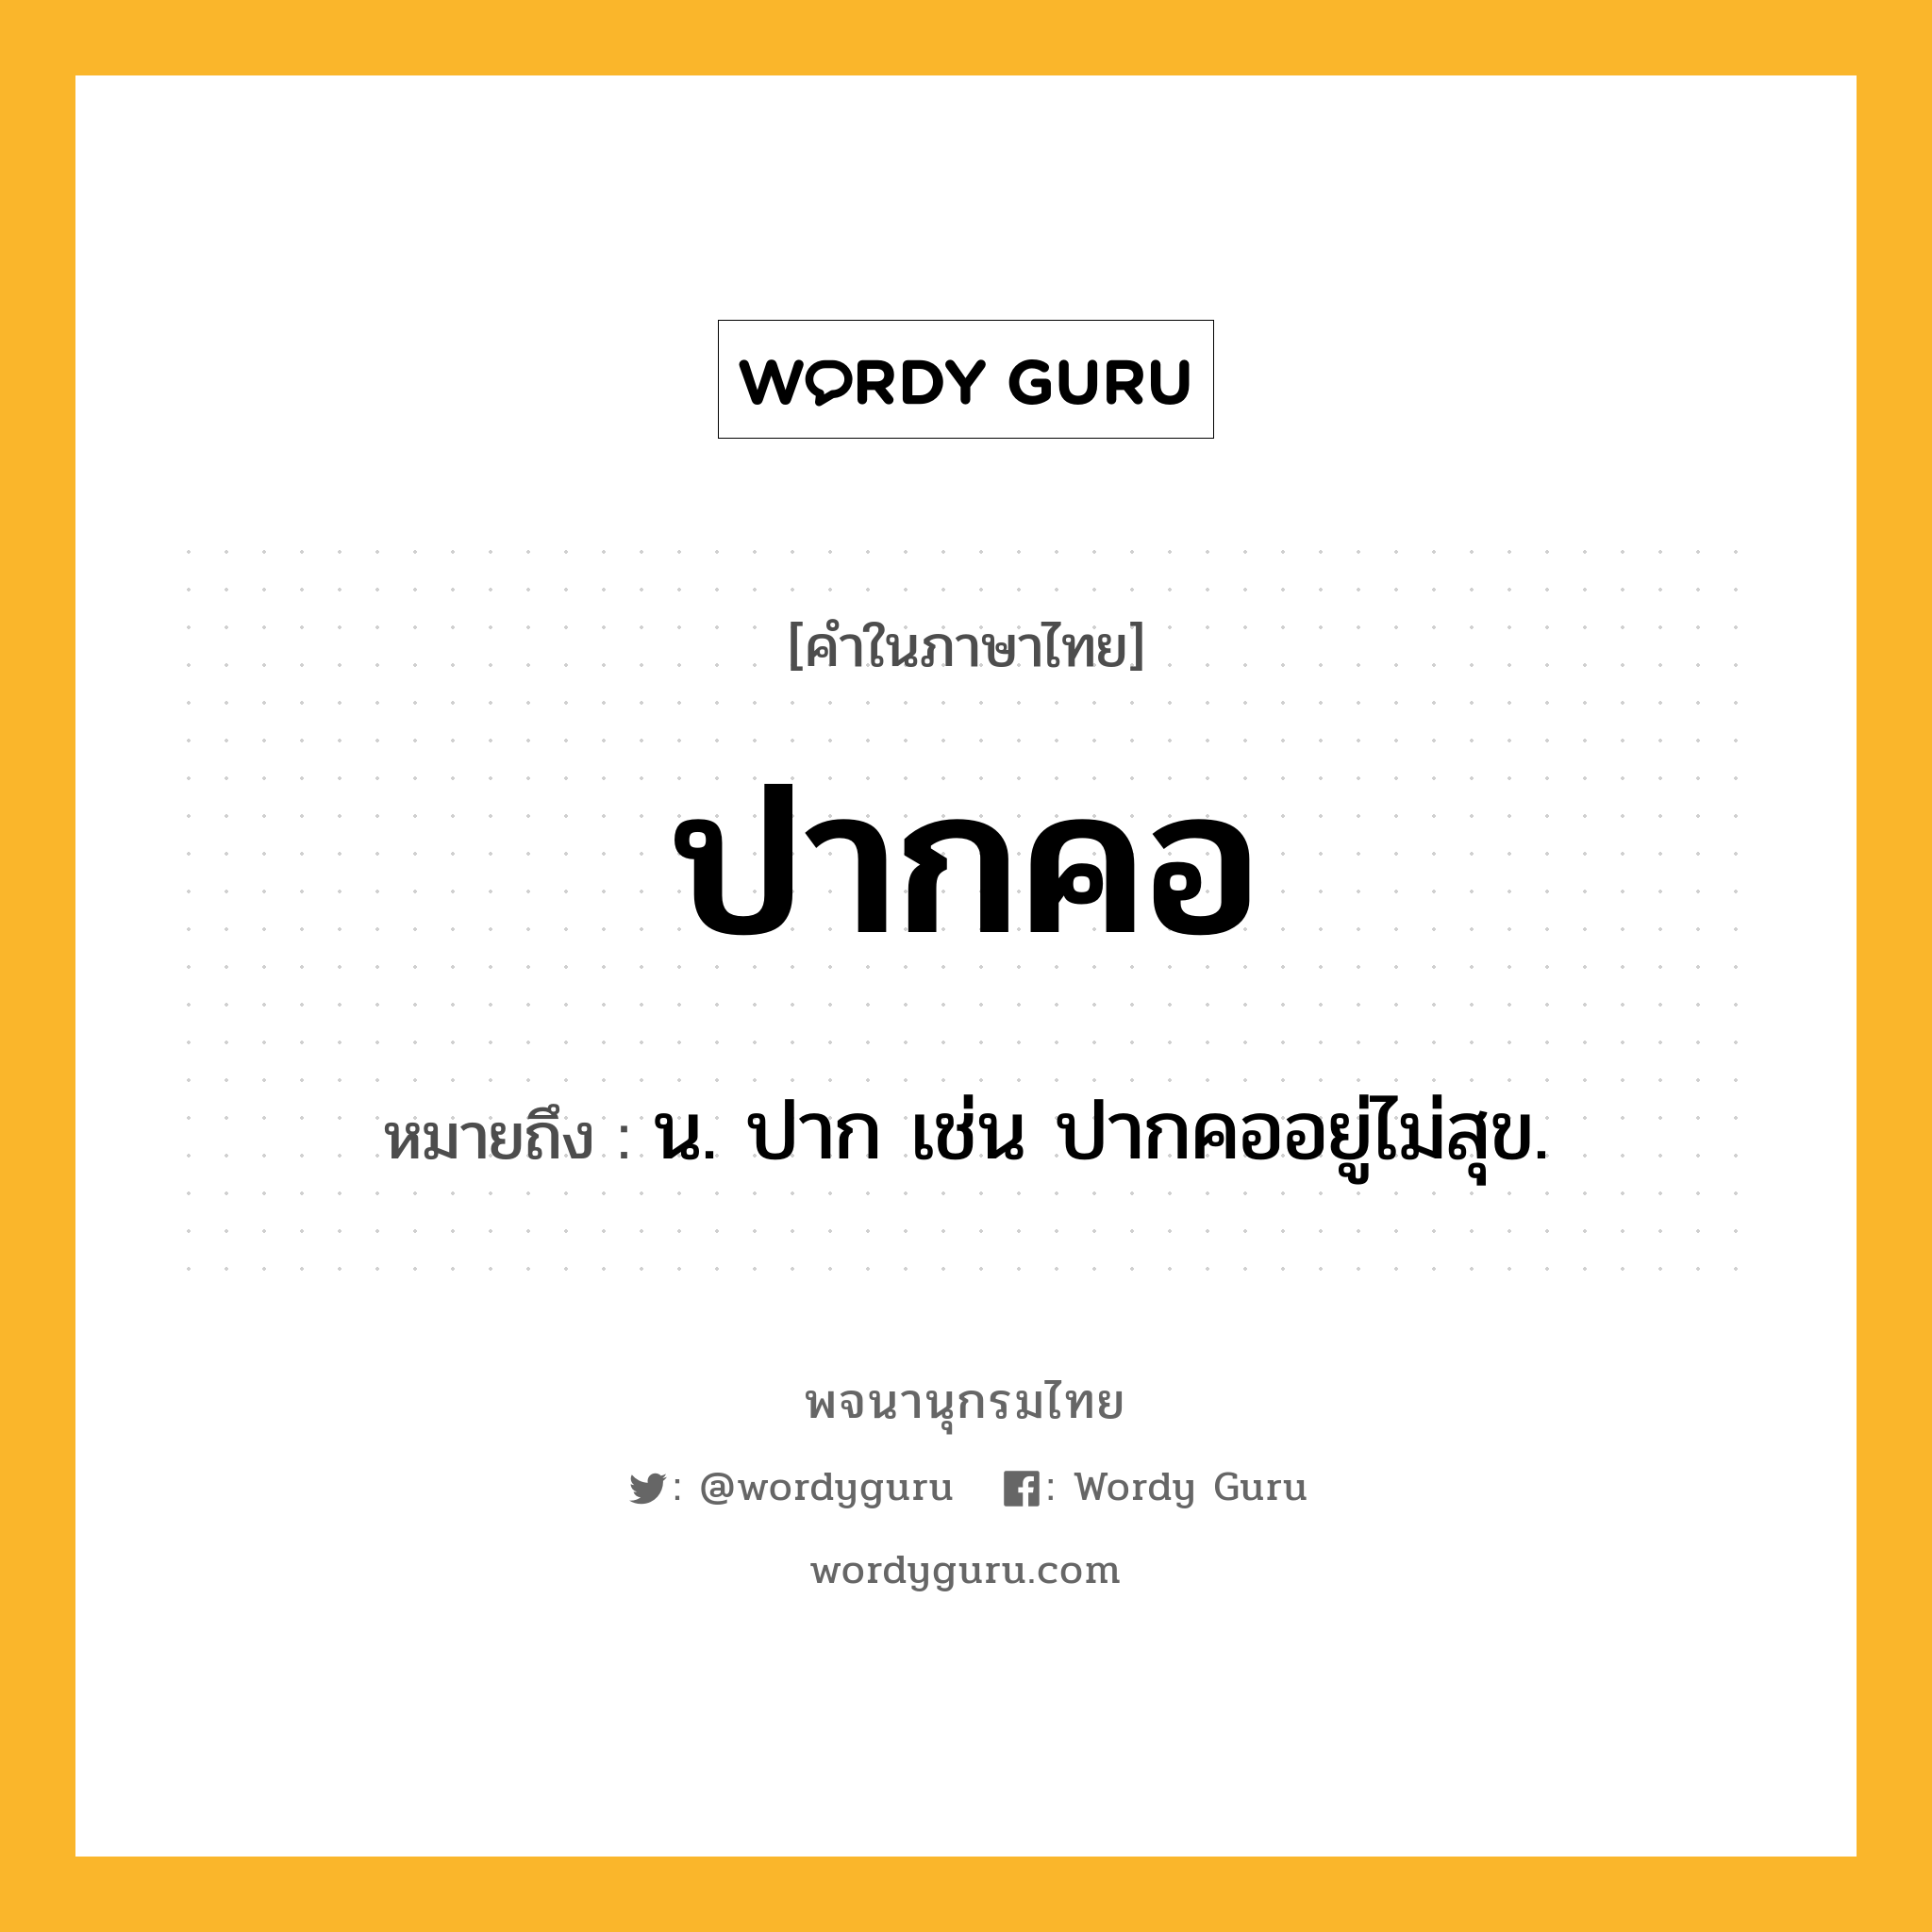 ปากคอ ความหมาย หมายถึงอะไร?, คำในภาษาไทย ปากคอ หมายถึง น. ปาก เช่น ปากคออยู่ไม่สุข.